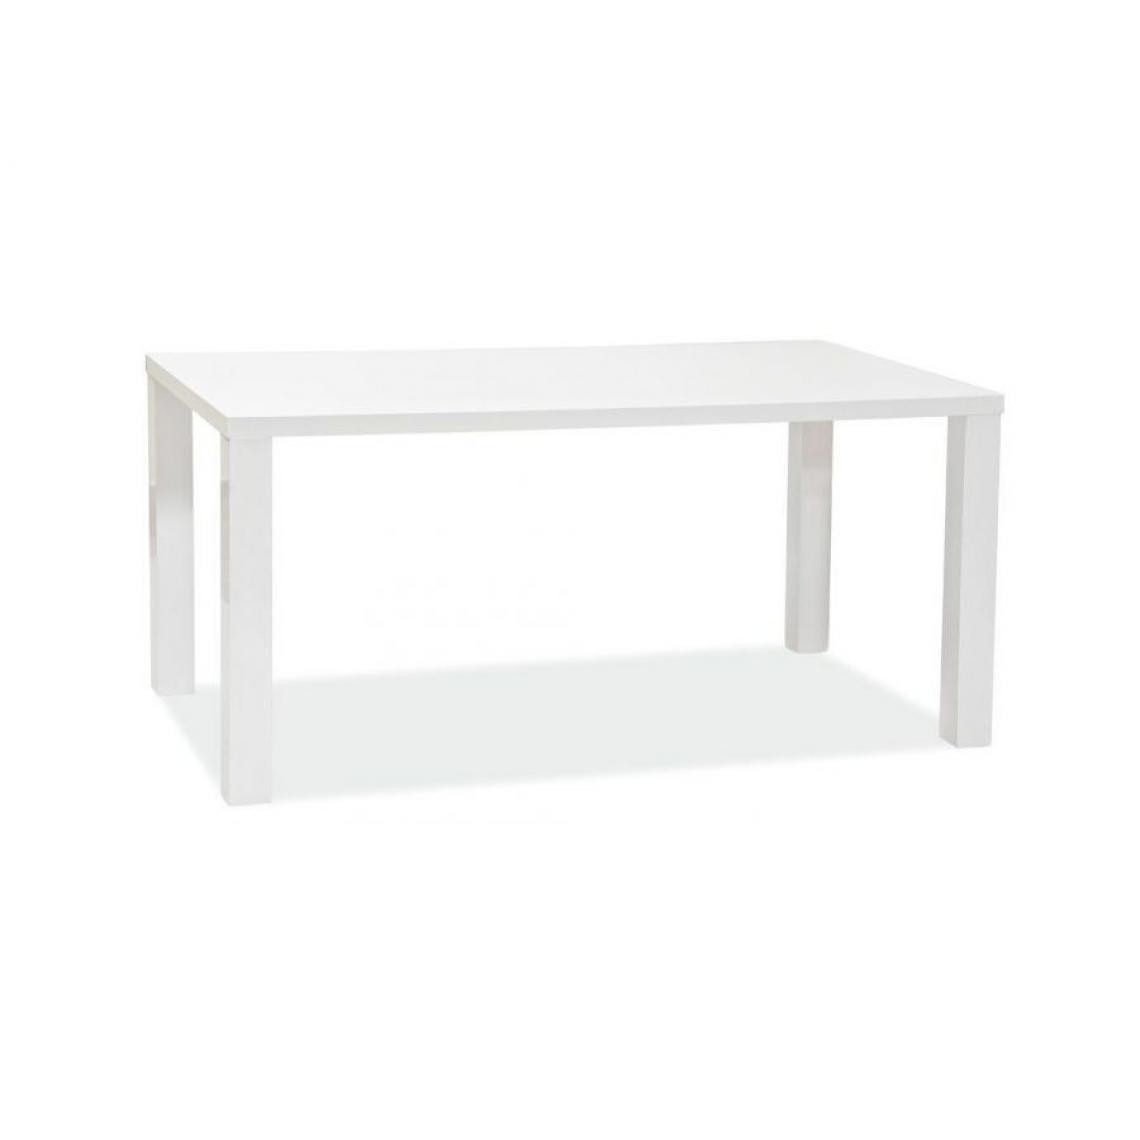 Hucoco - MONTEGA - Table élégante de style minimaliste - Dimensions : 120x80x75 cm - Plateau et piètement en MDF laqué - Blanc - Tables à manger